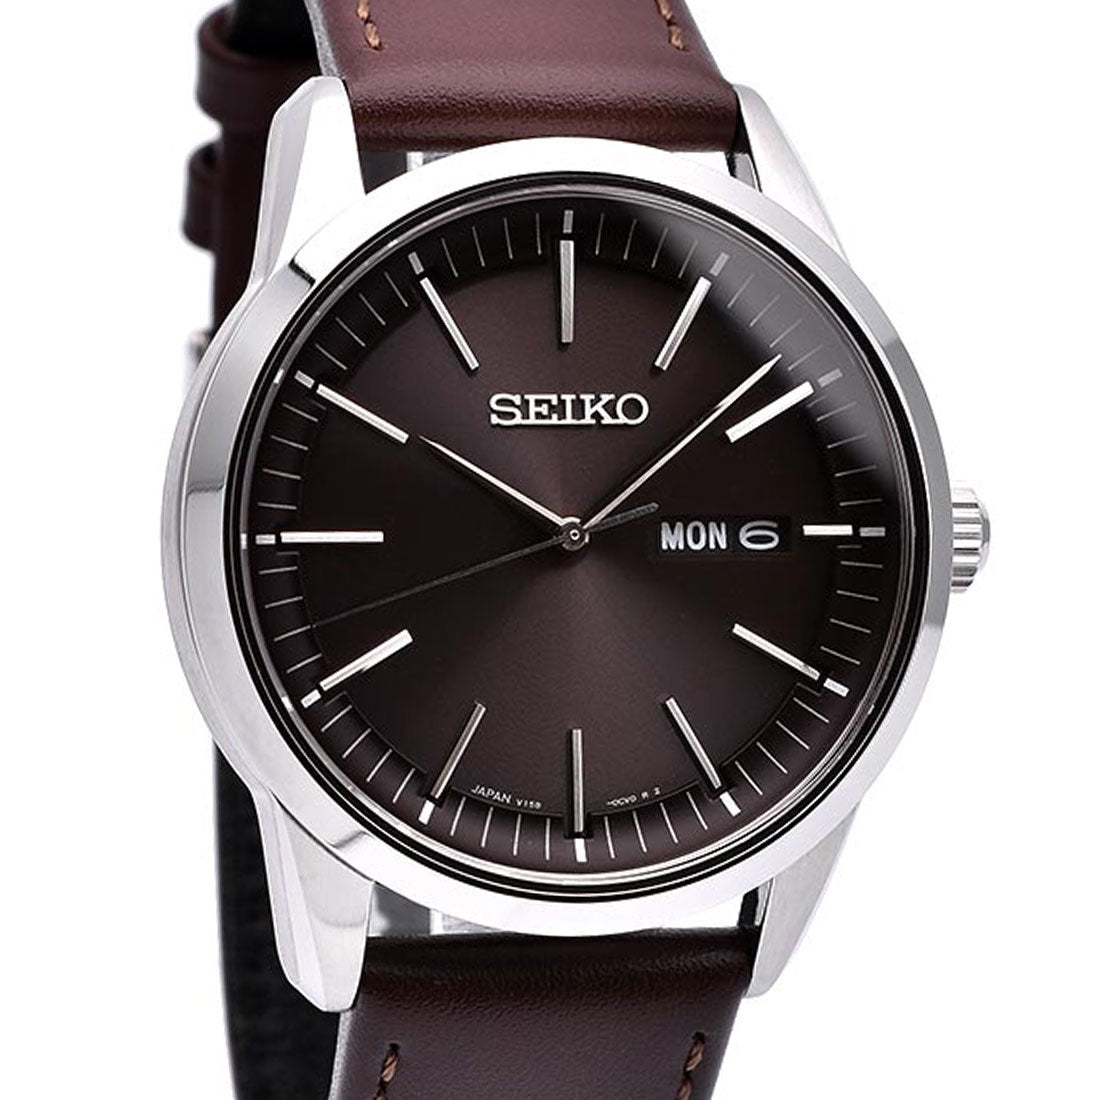 Seiko Selection Solar JDM Watch SBPX127 -Seiko